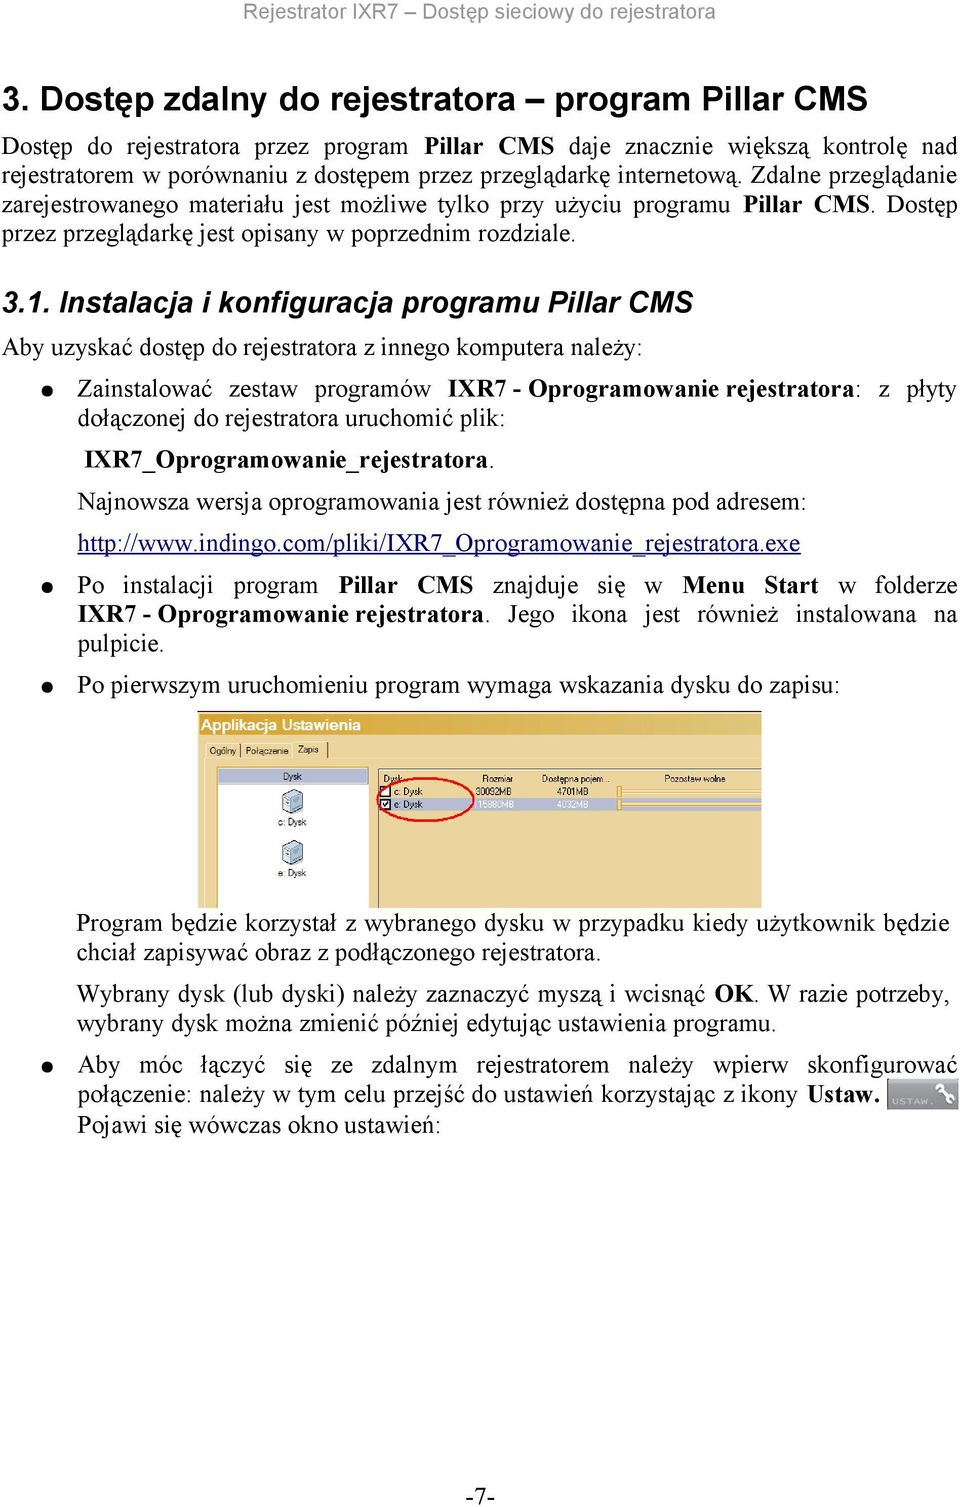 Instalacja i konfiguracja programu Pillar CMS Aby uzyskać dostęp do rejestratora z innego komputera należy: Zainstalować zestaw programów IXR7 - Oprogramowanie rejestratora: z płyty dołączonej do